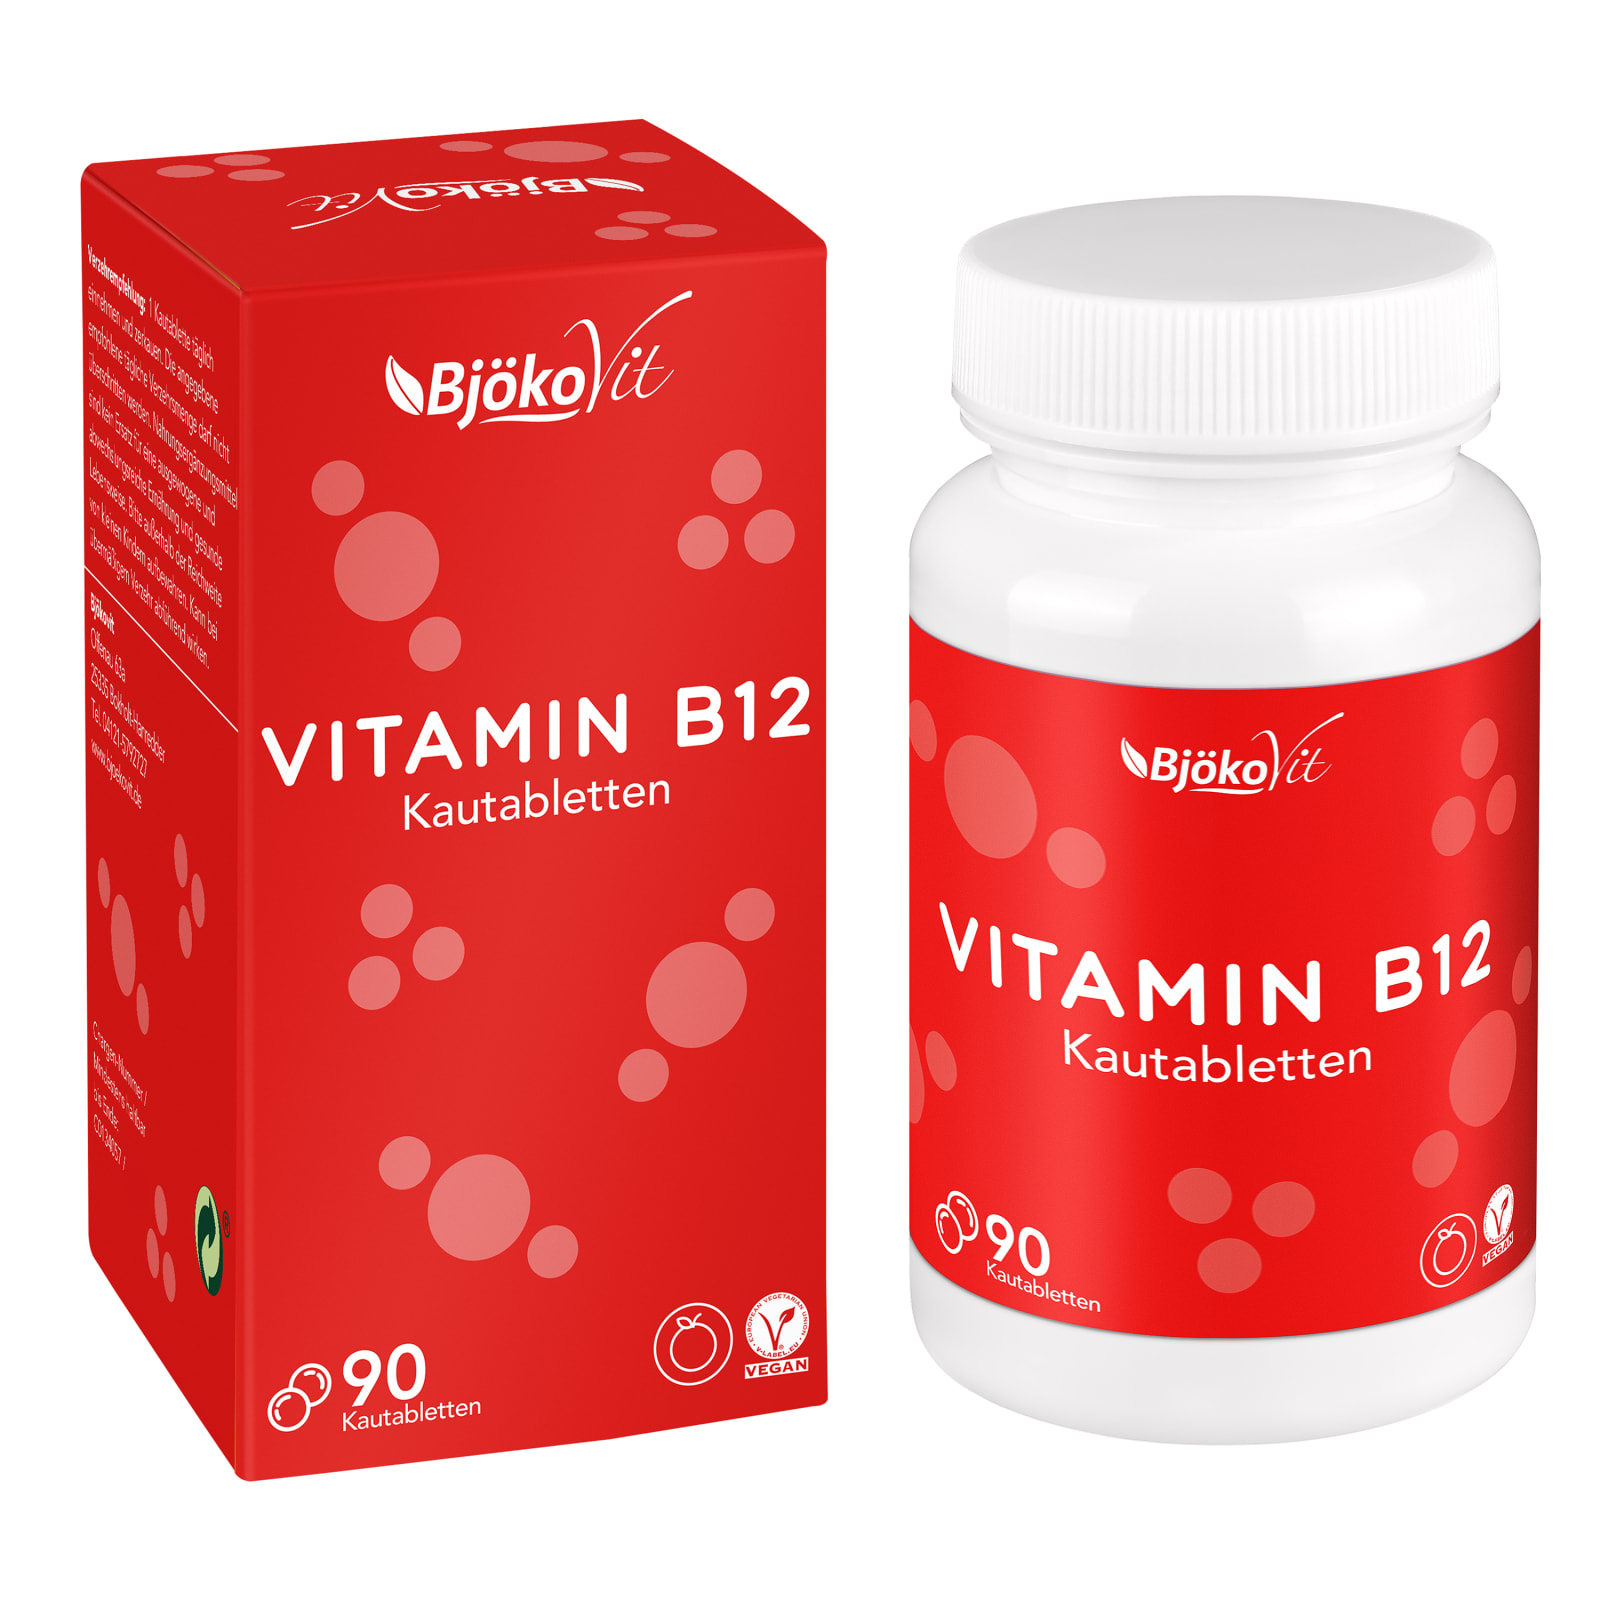 embargo jazz kunstmest Vitamine B12 with Orange Flavour (90 tabs) van BjökoVit kopen | Bodylab Shop